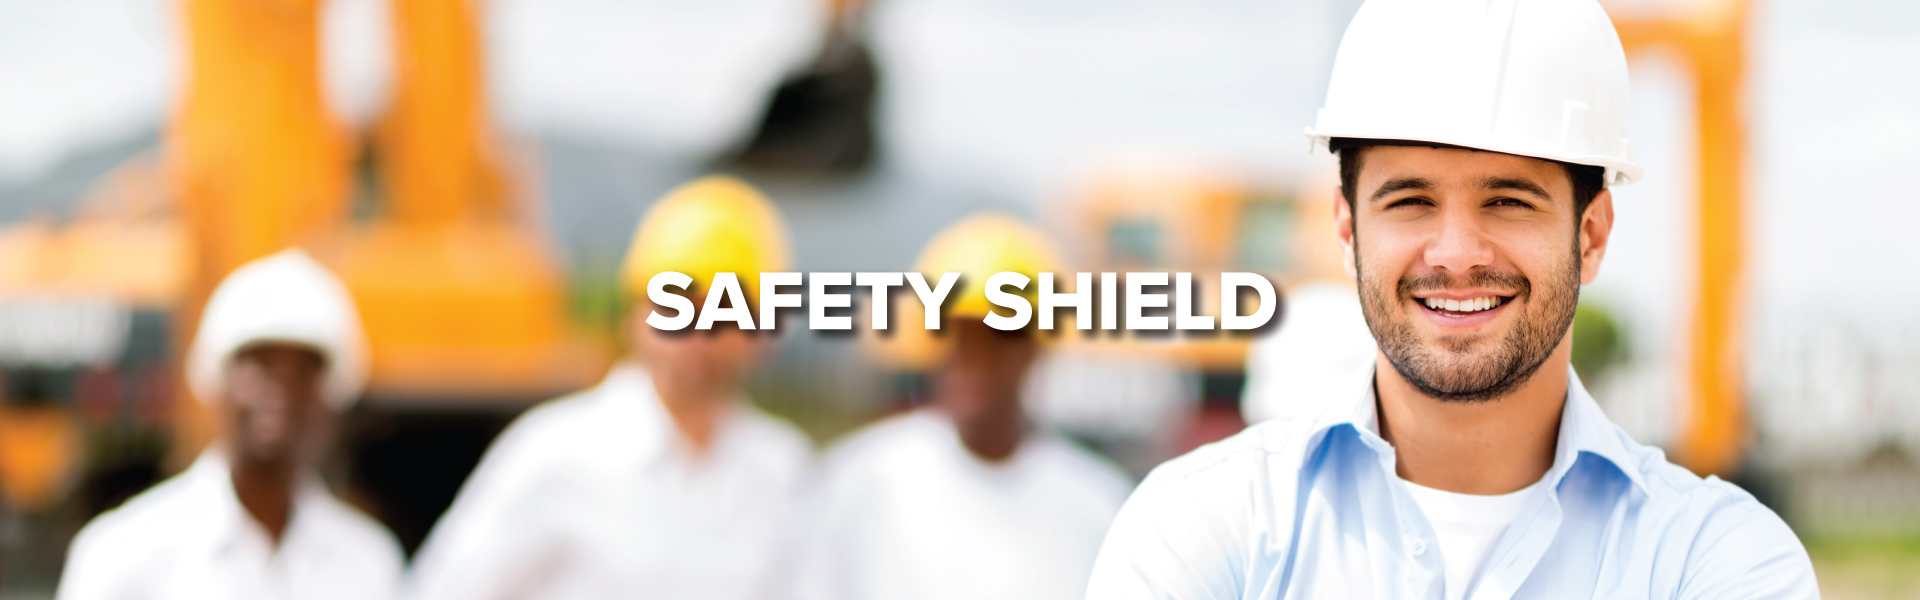 Safety-Shield-Header_1920x600